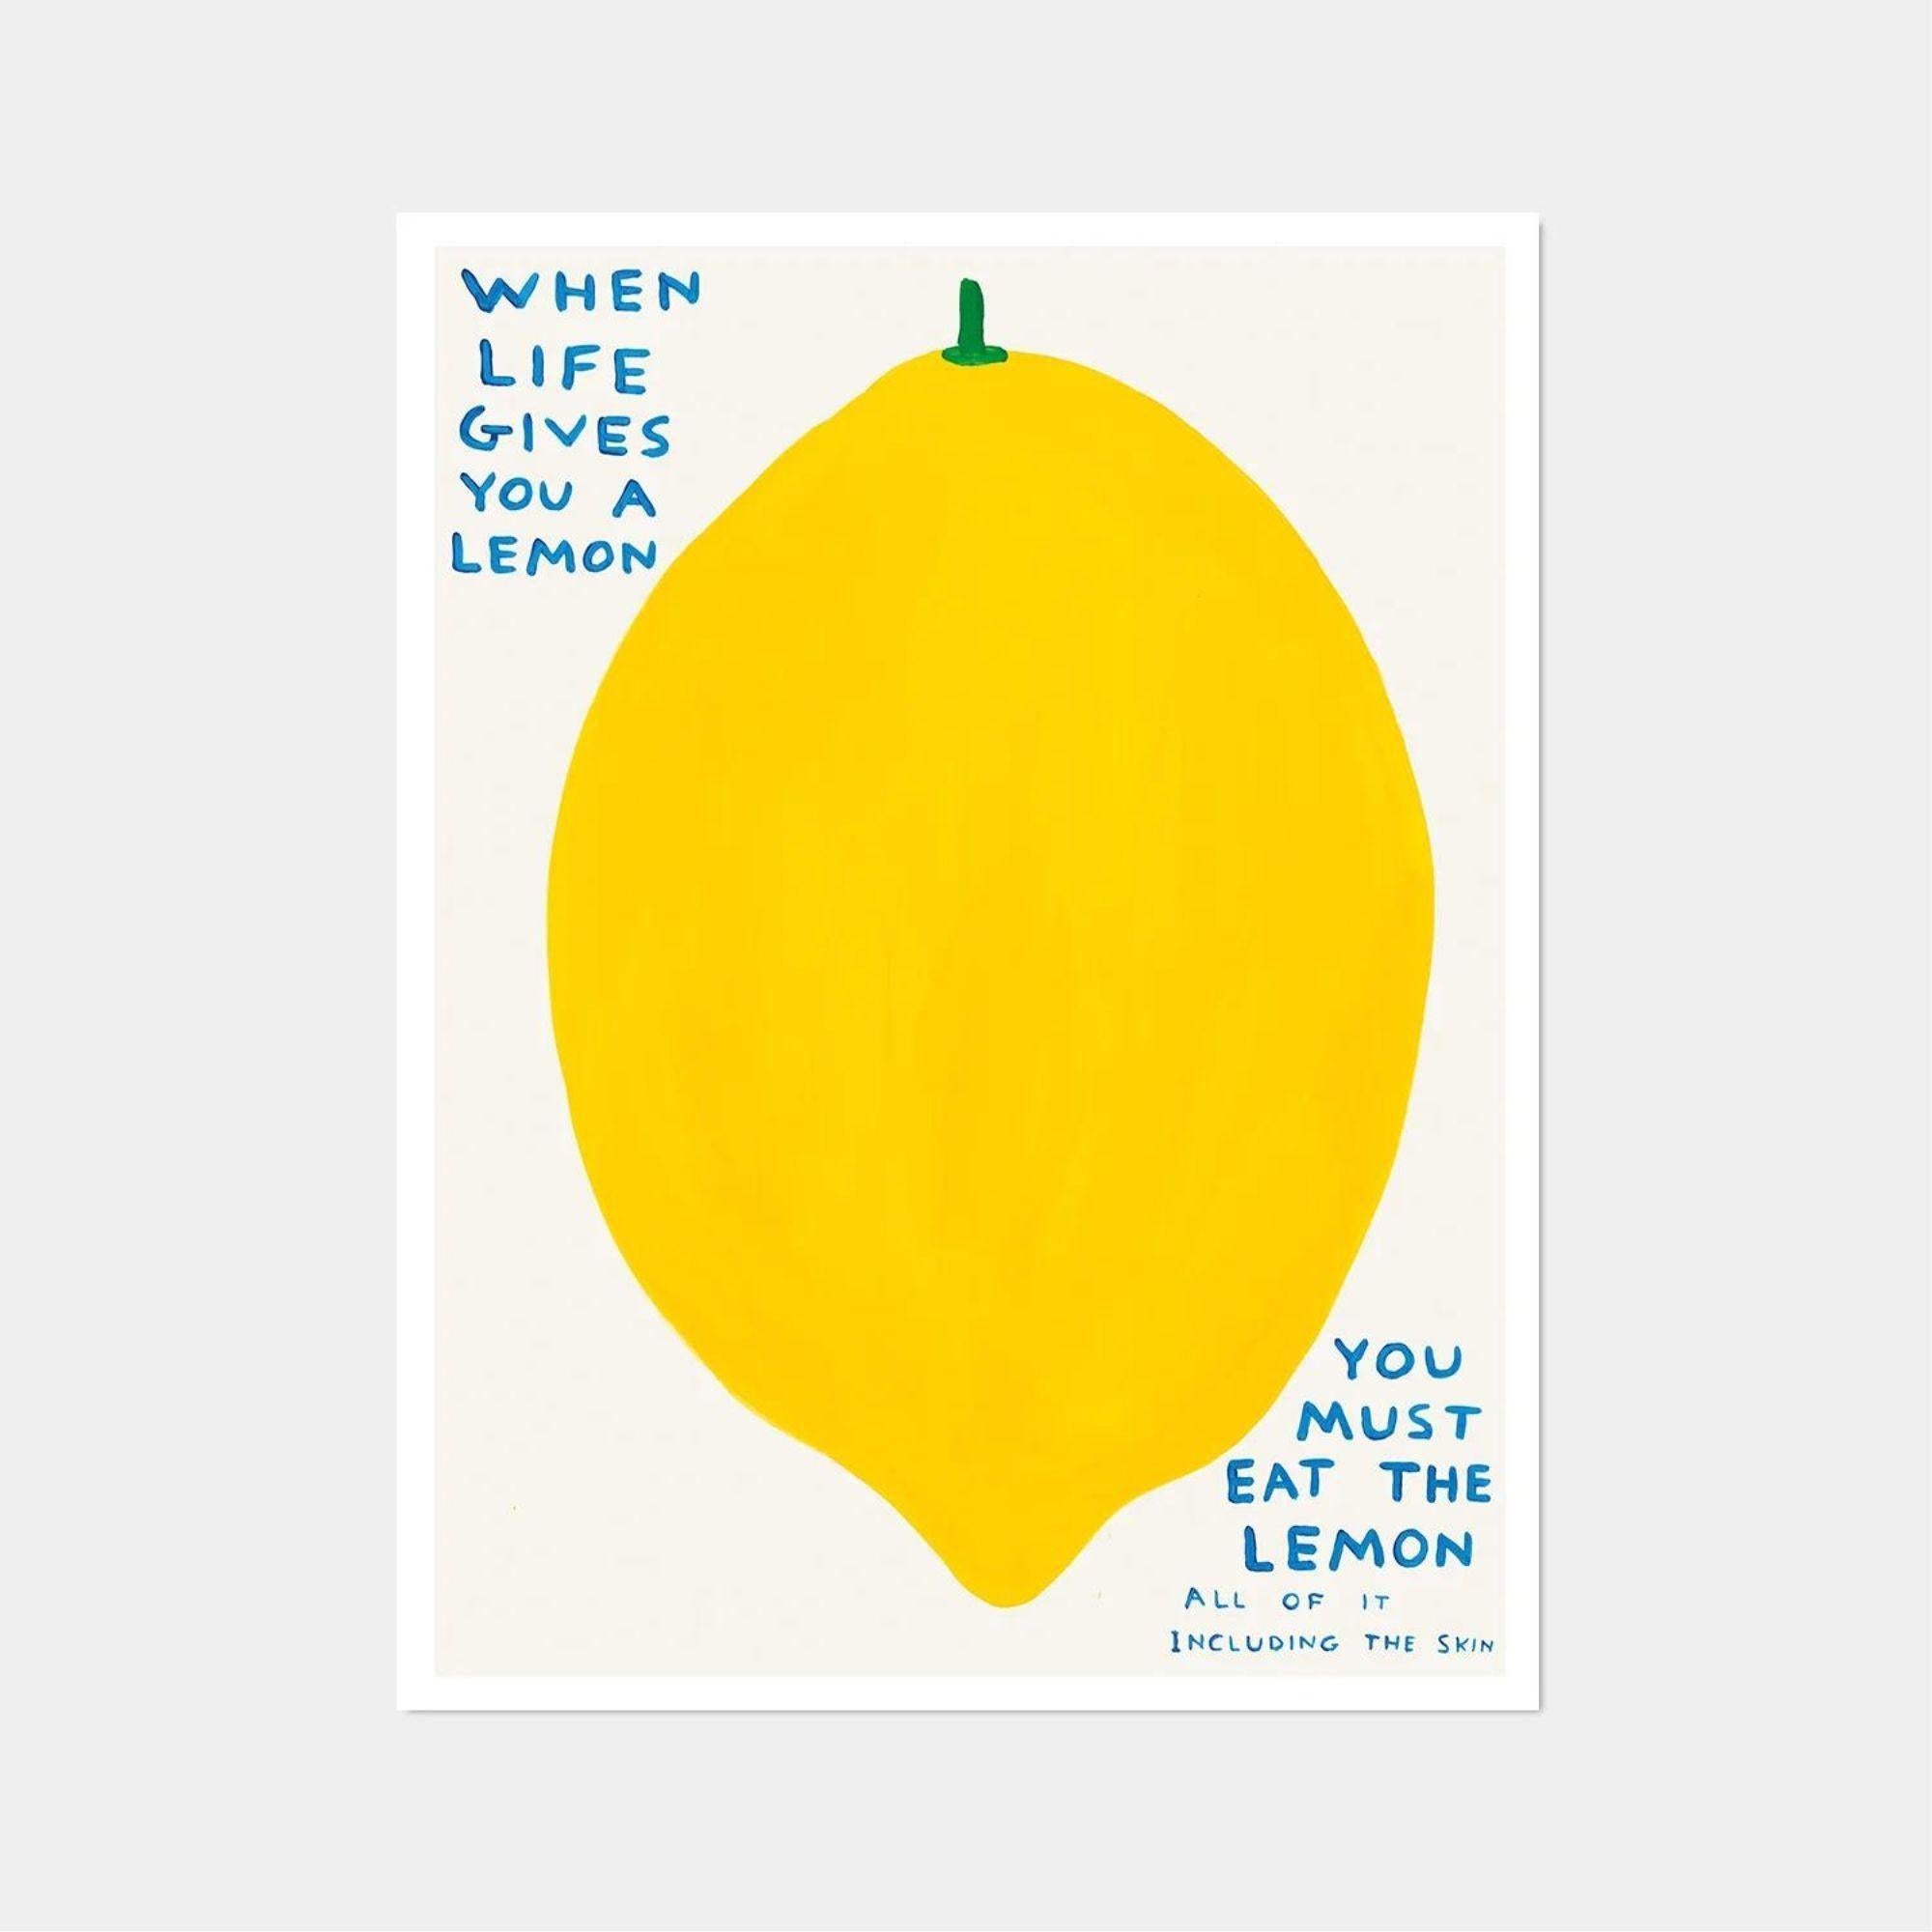 David Shrigley, Quand la vie vous donne un citron, 2021

60 x 80 cm

Lithographie offset

Imprimé sur papier Munken Lynx 200g

Narayana Press au Danemark